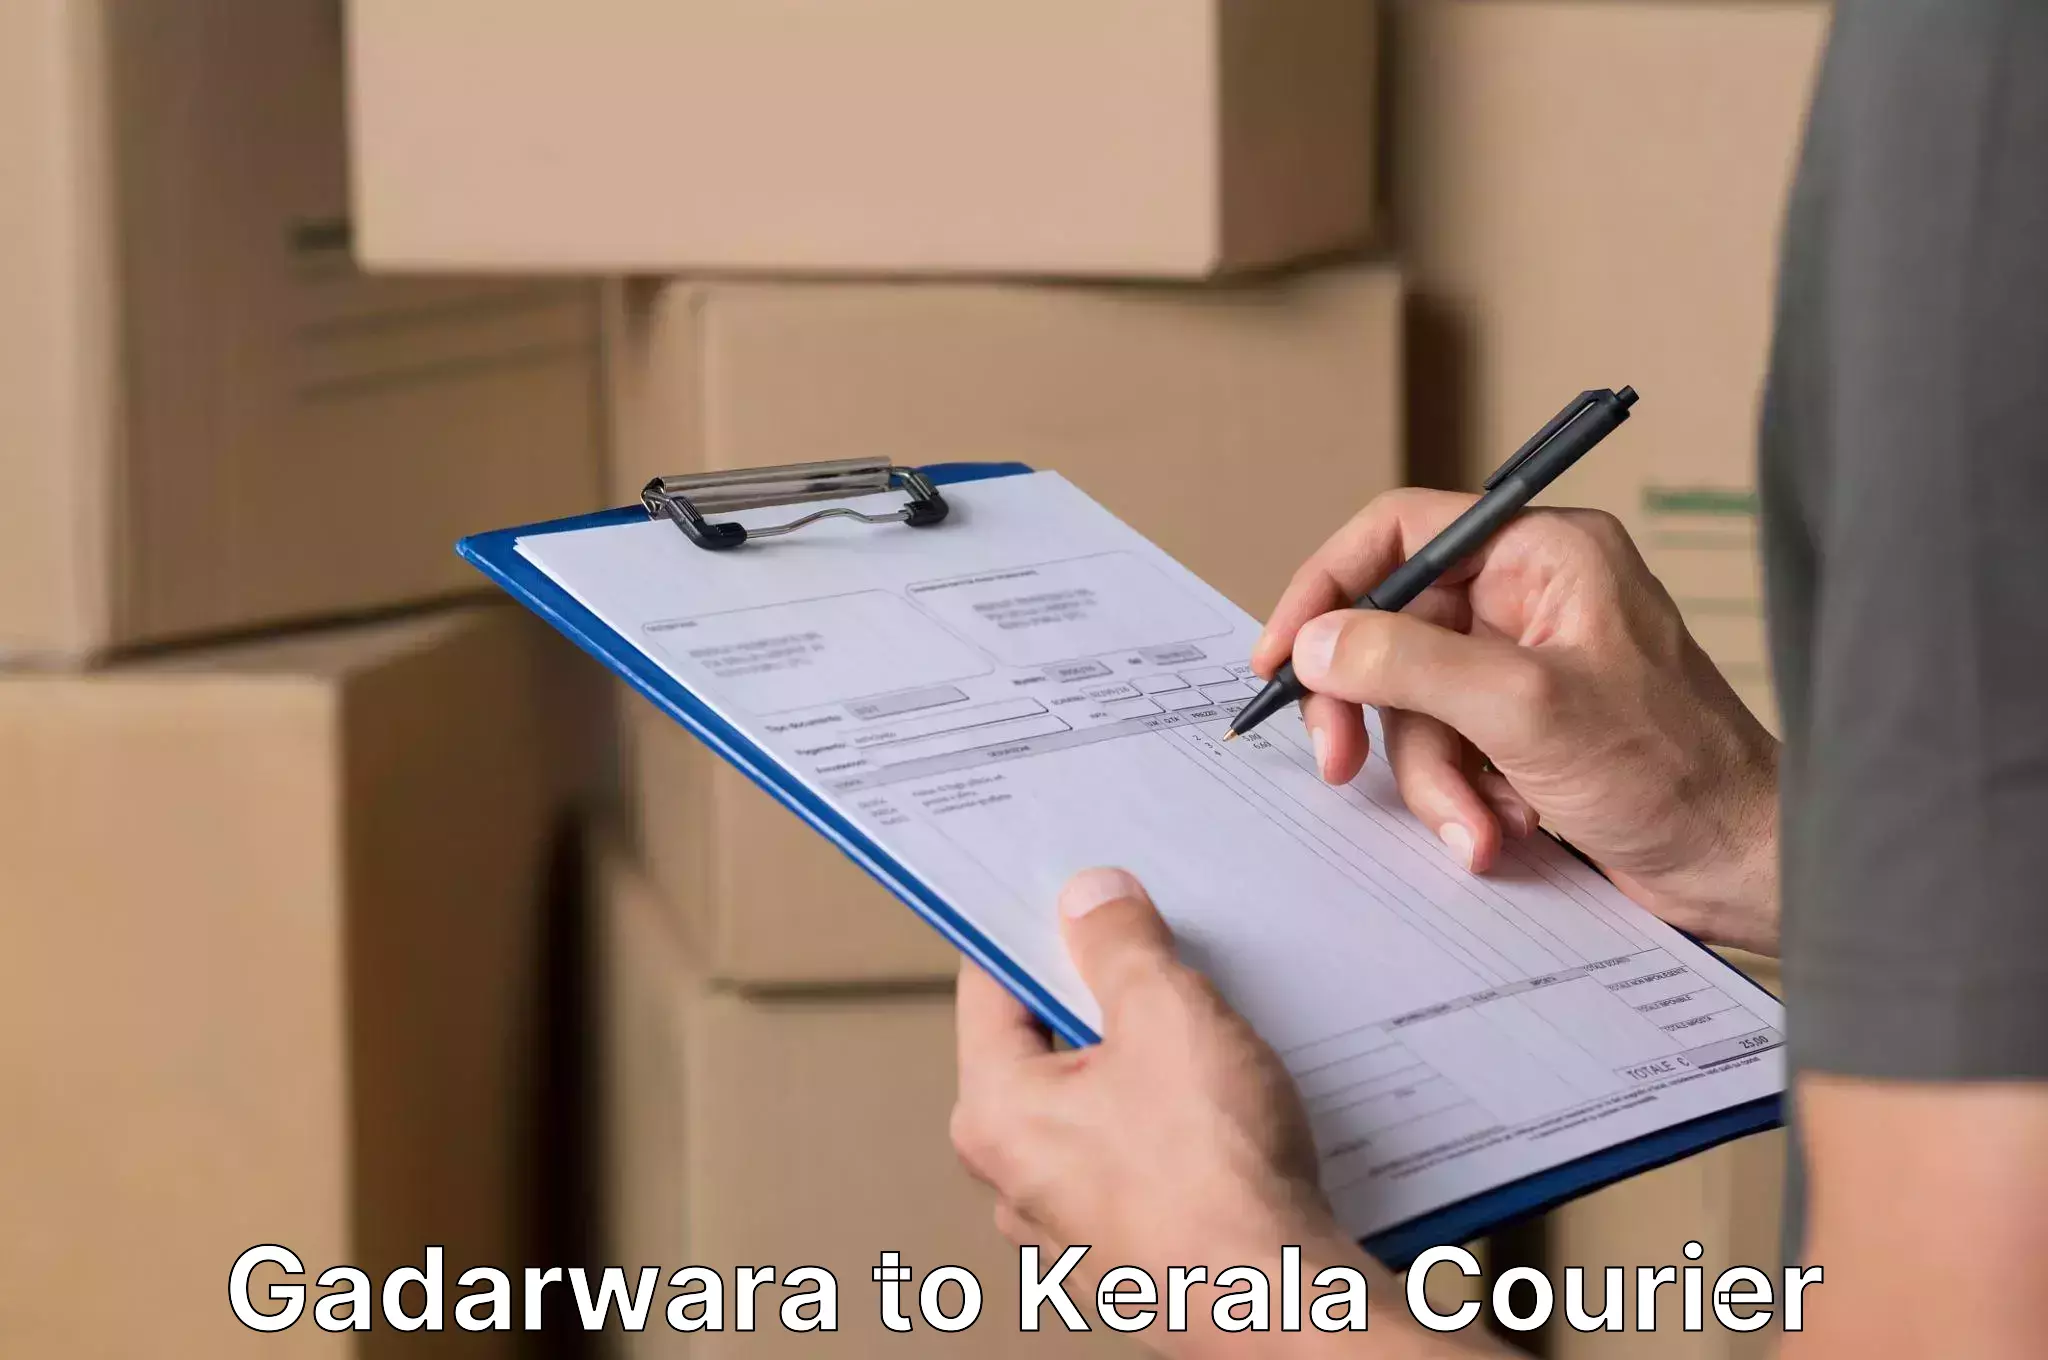 Efficient packing and moving Gadarwara to Kuthiathode